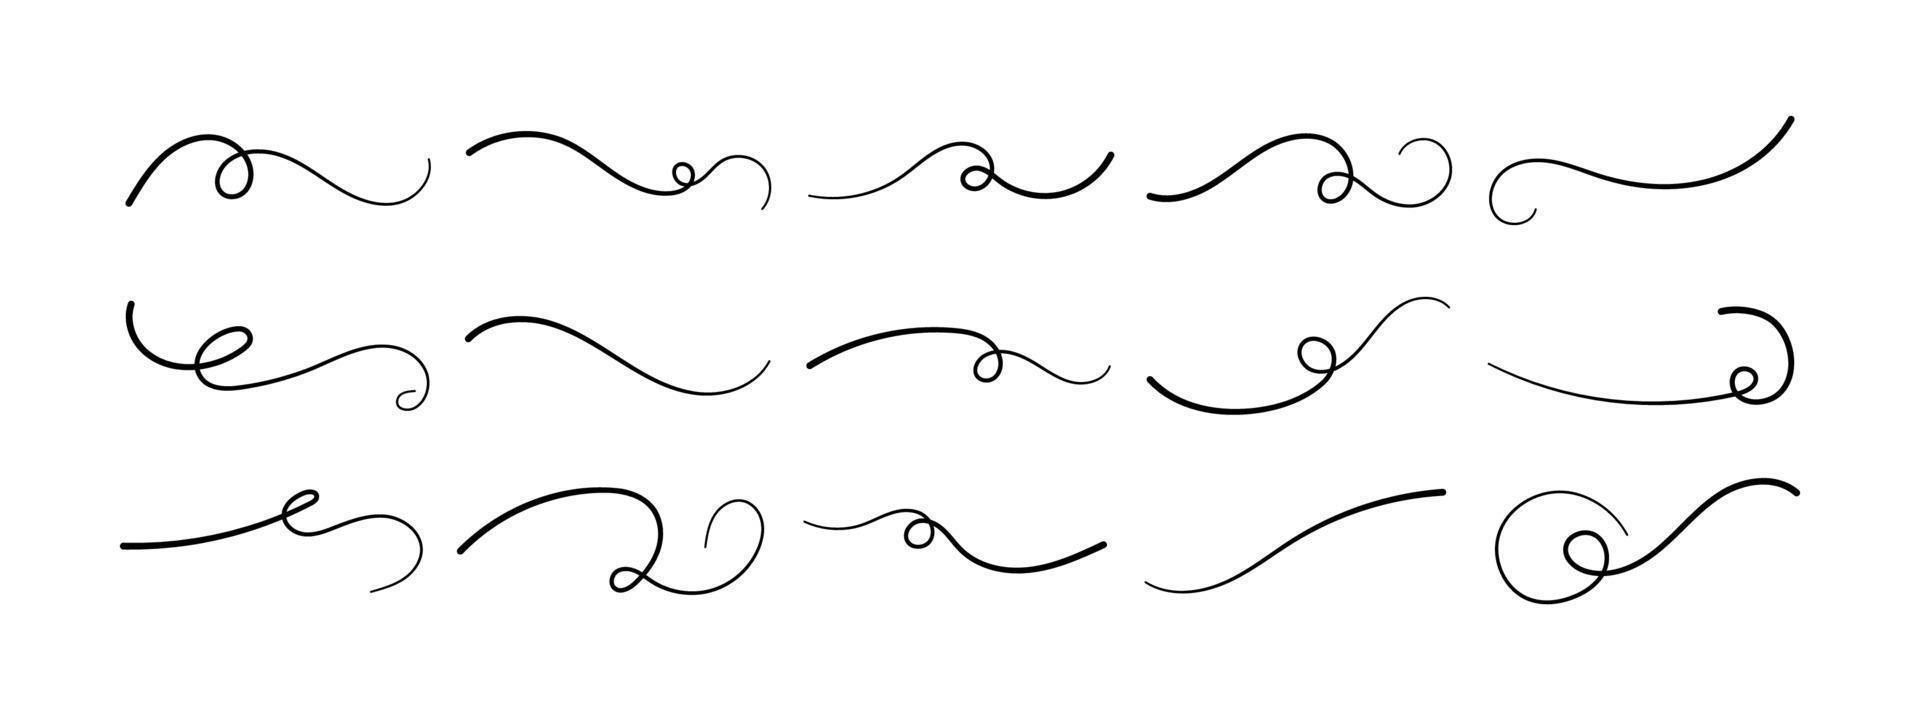 conjunto de dibujo a mano subrayado swoosh. las inscripciones caligráficas enfatizan la línea curva. elementos de tipografía vectorial. colección de trazos de pincel negro aislado sobre fondo blanco. adorno de colas. vector